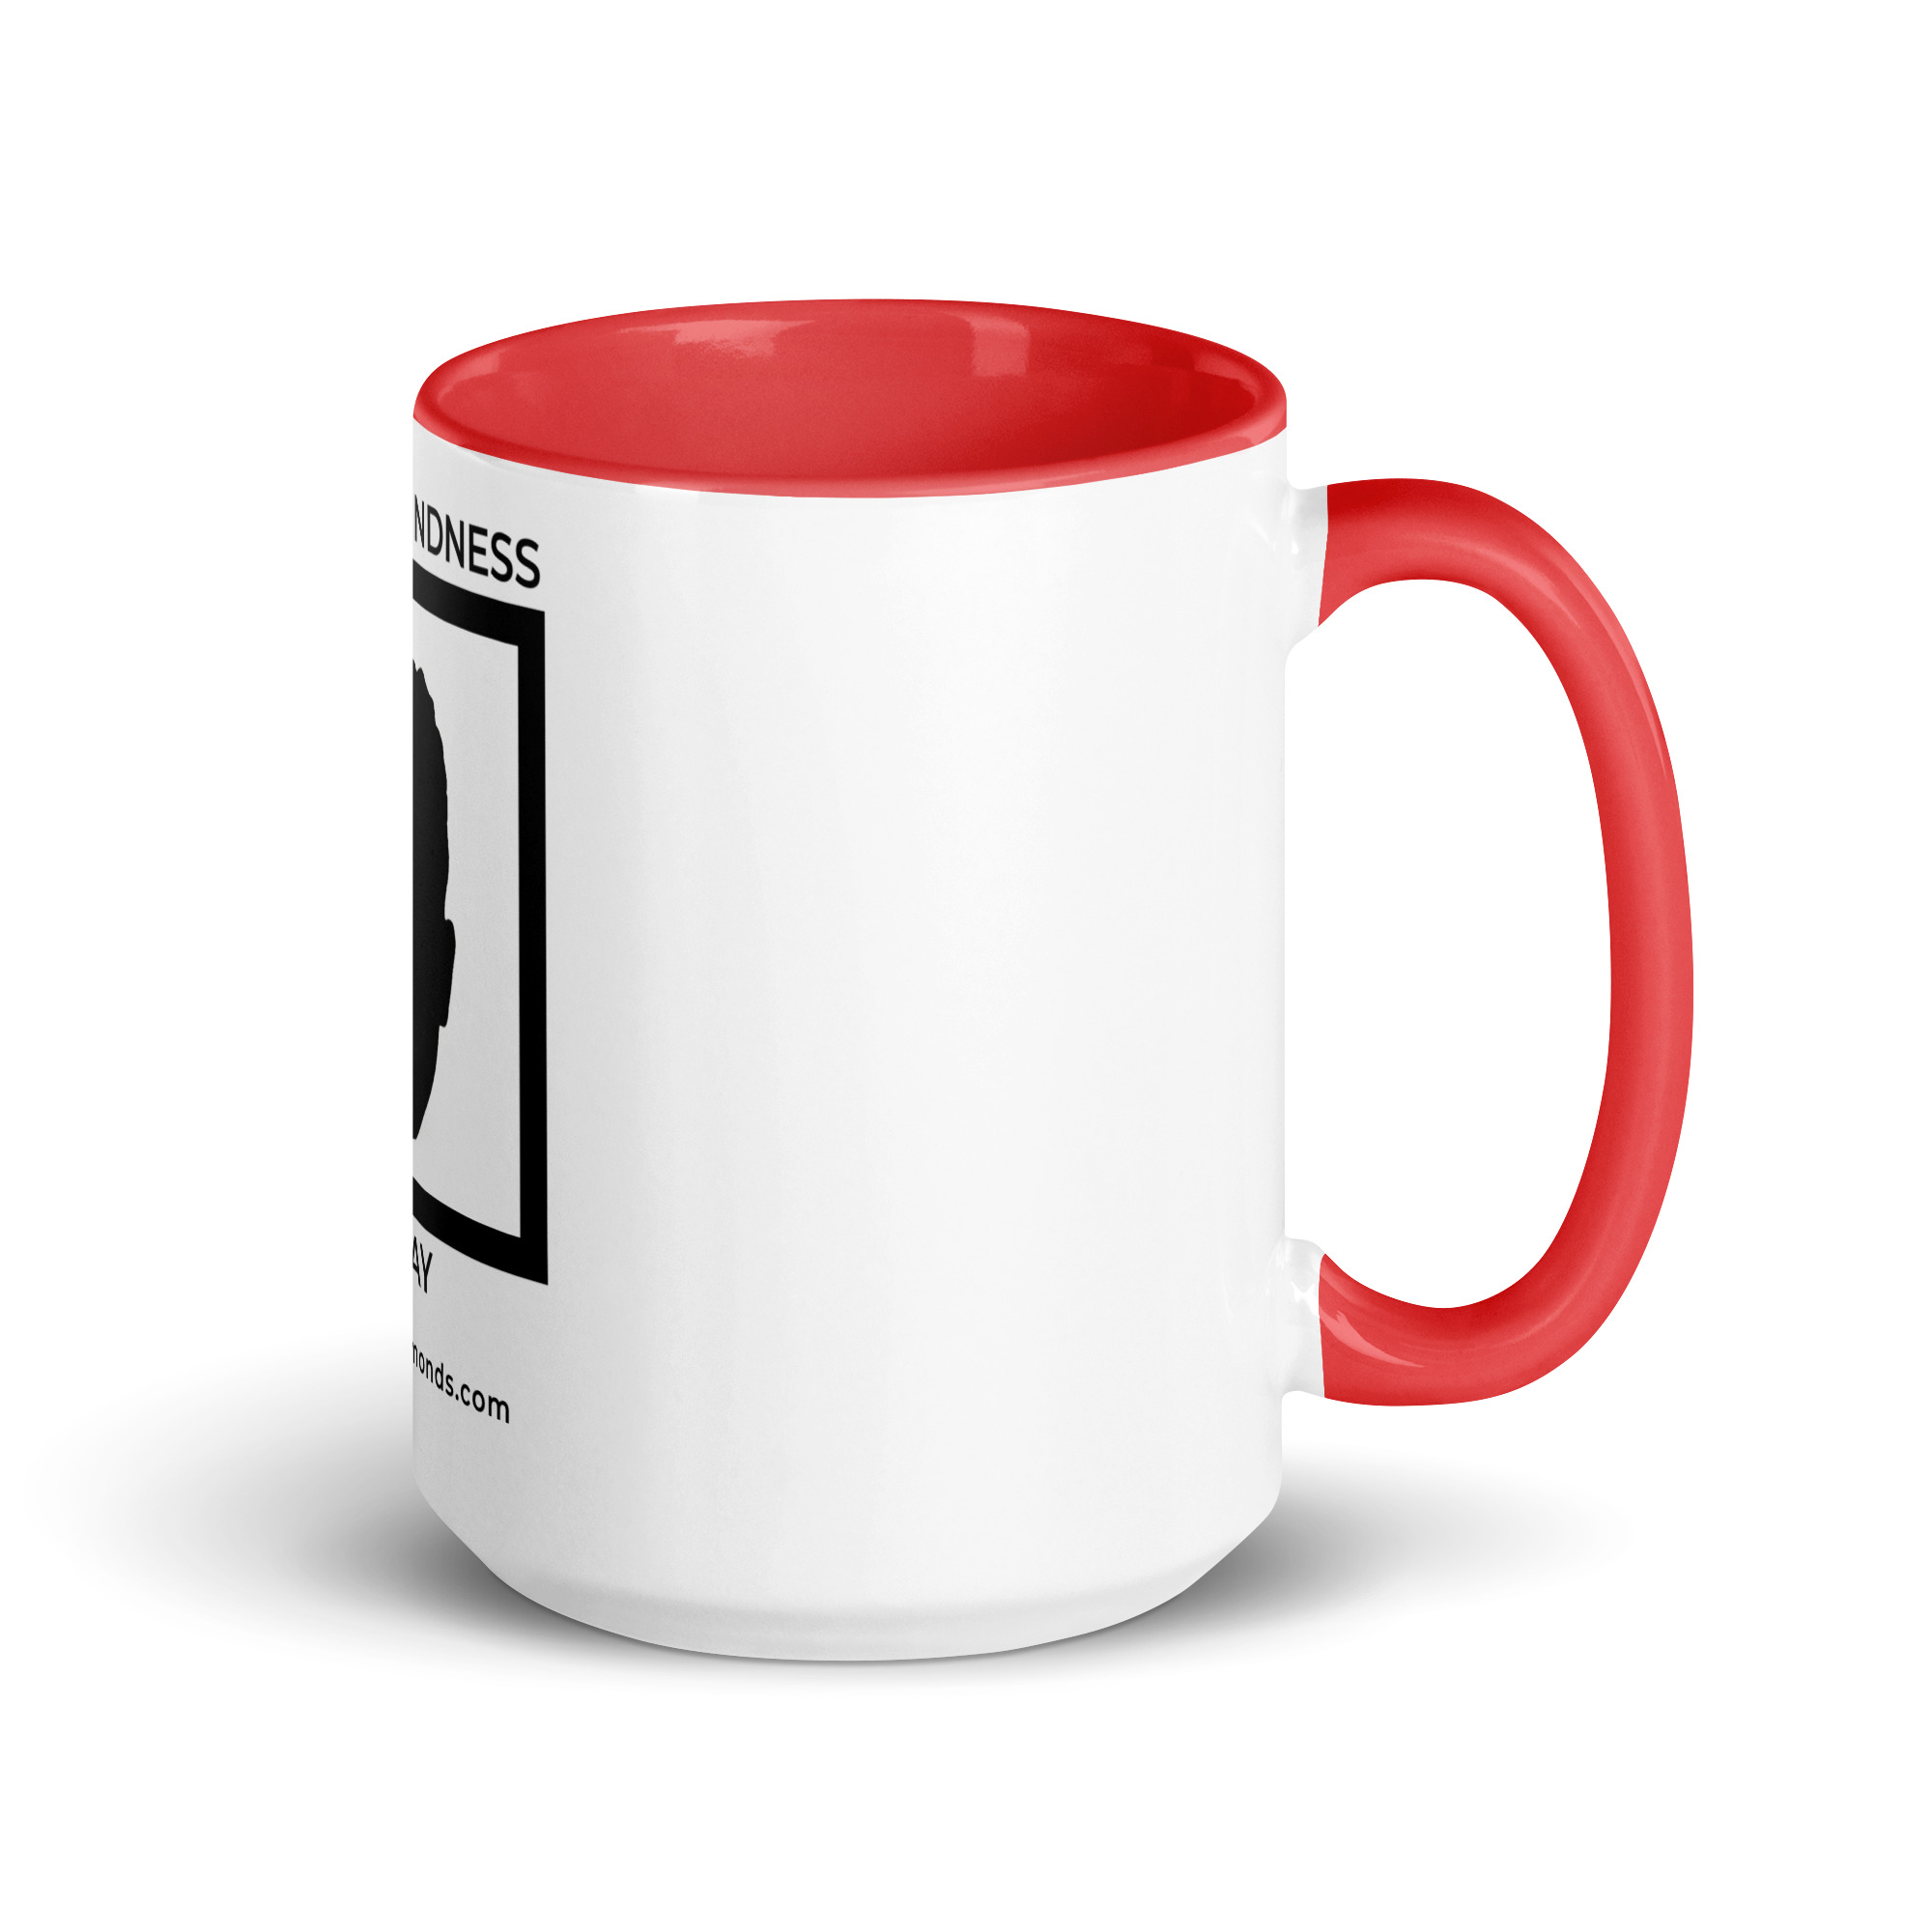 white-ceramic-mug-with-color-inside-red-15-oz-right-6522a1a403cb7.jpg